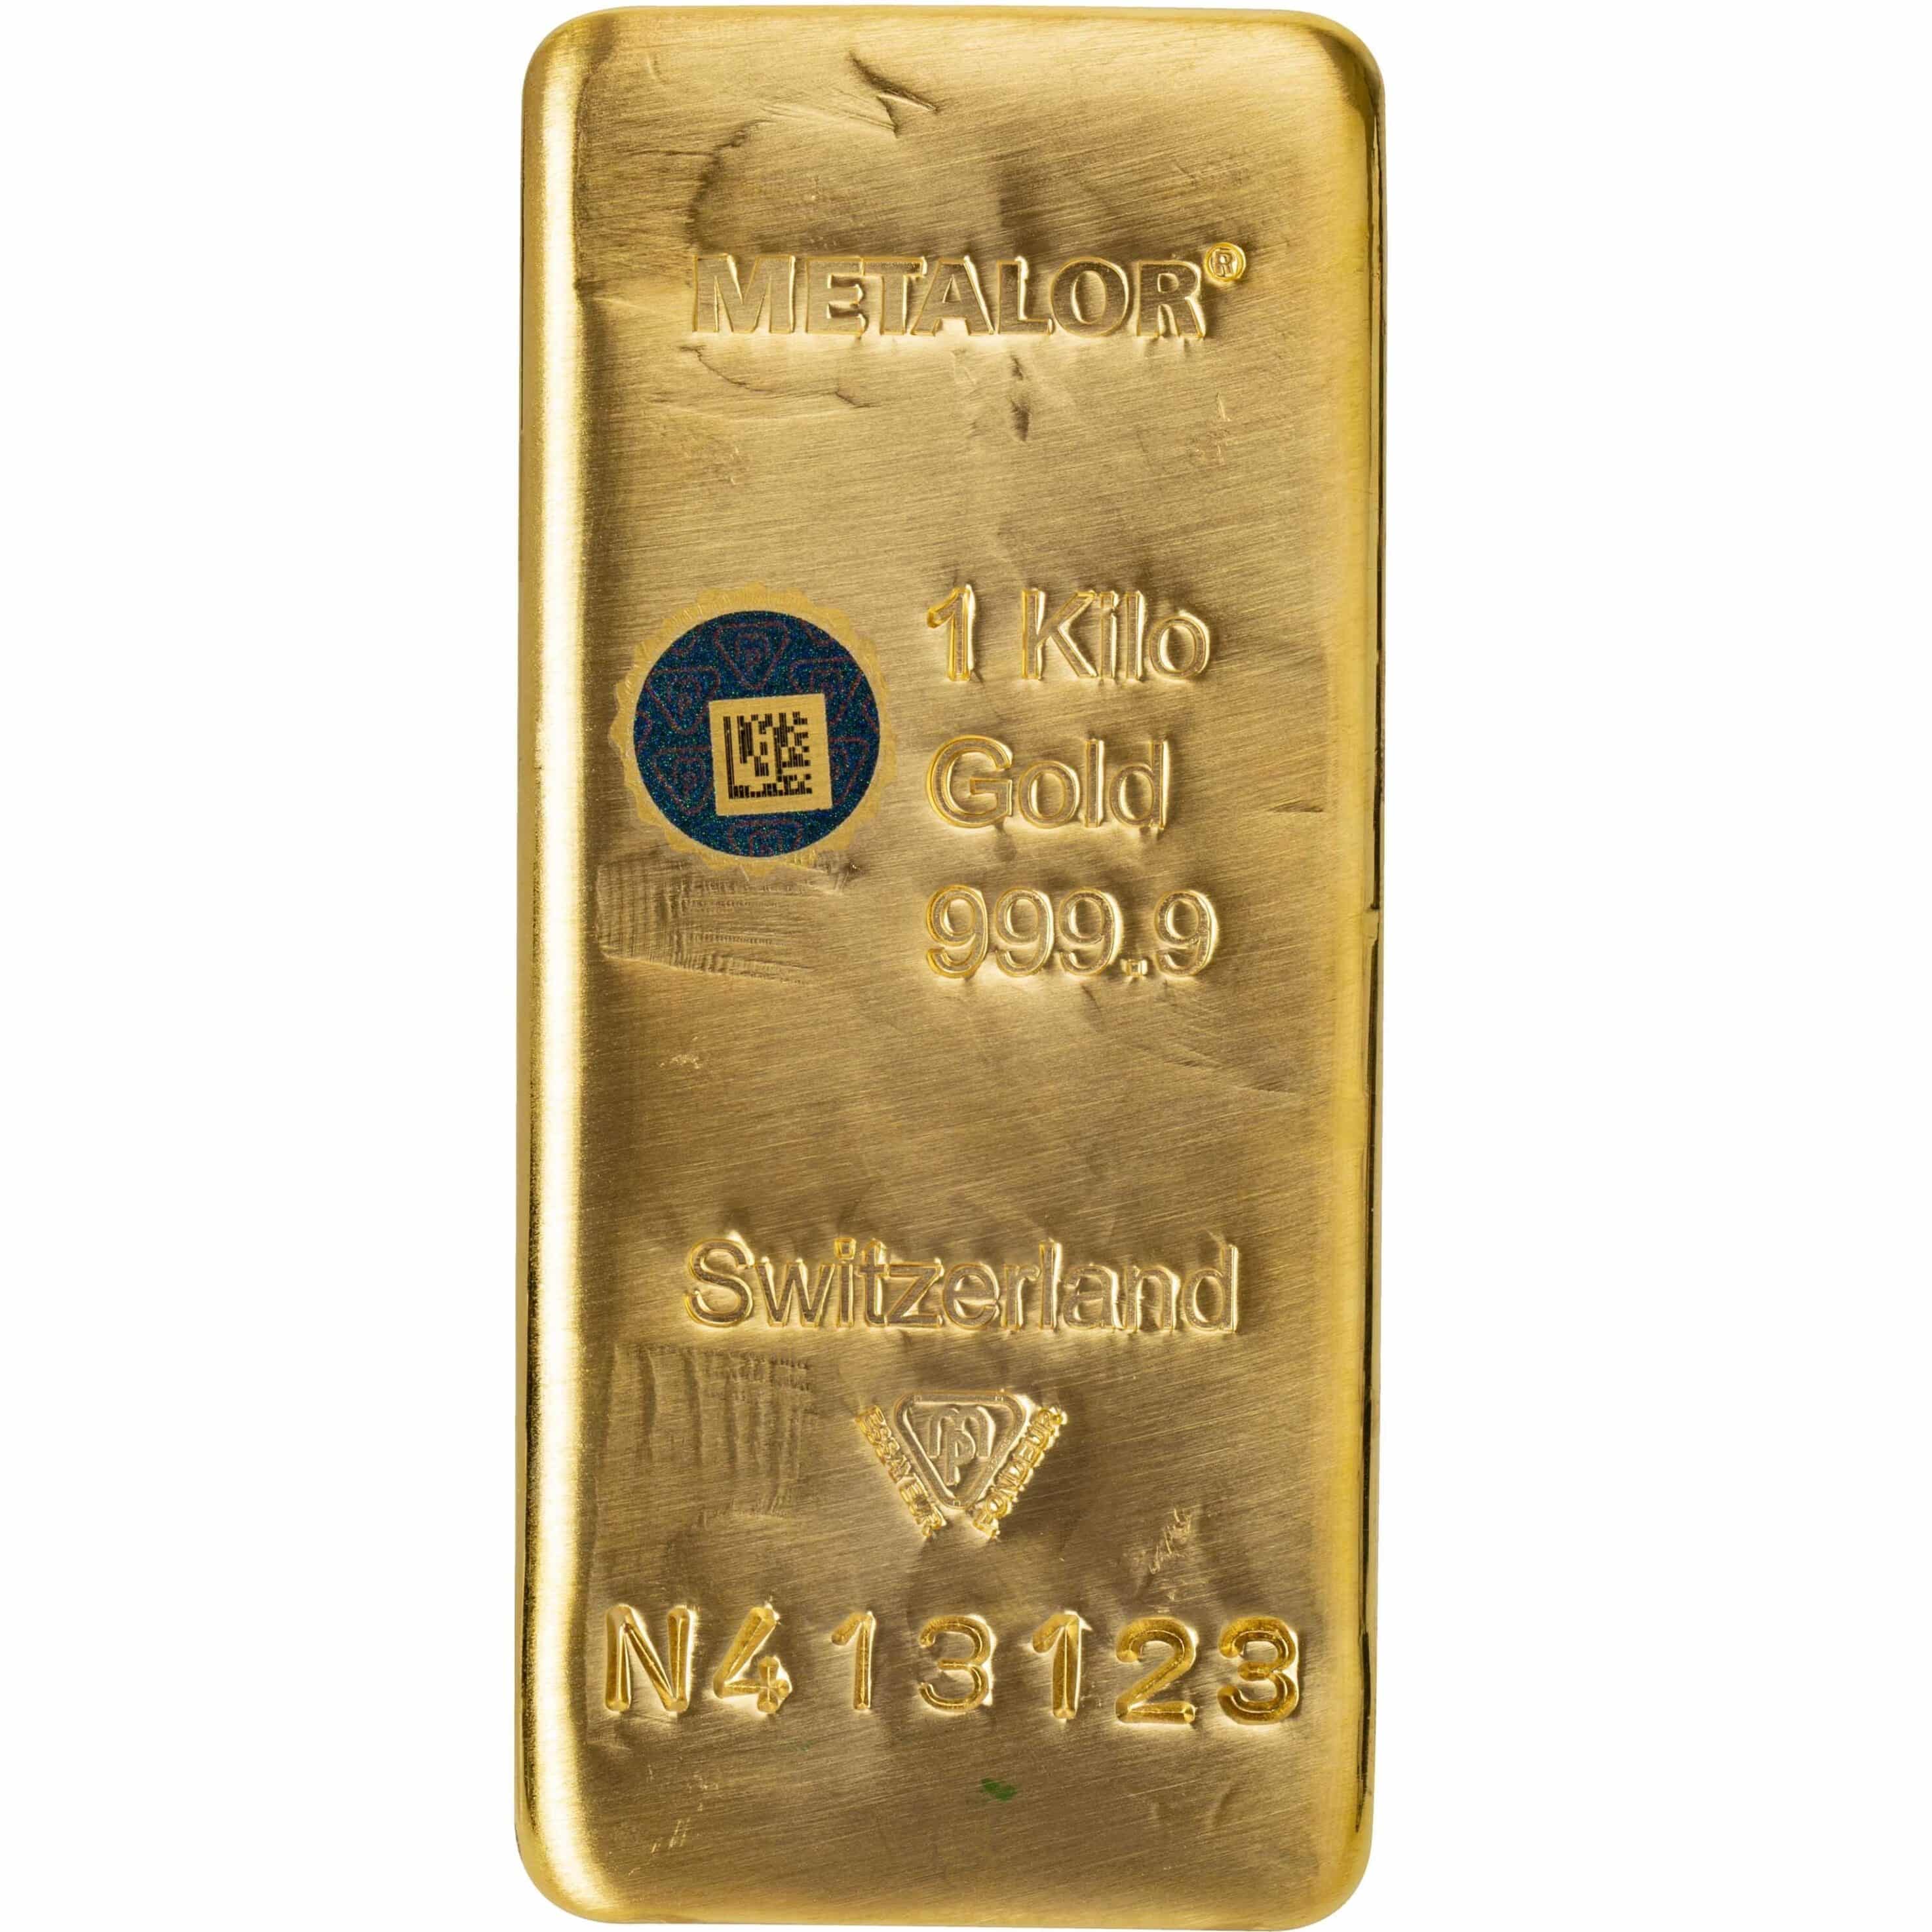 1000 gr Støbt Guldbarre ‰, Metalor Schweiz Vitus Guld